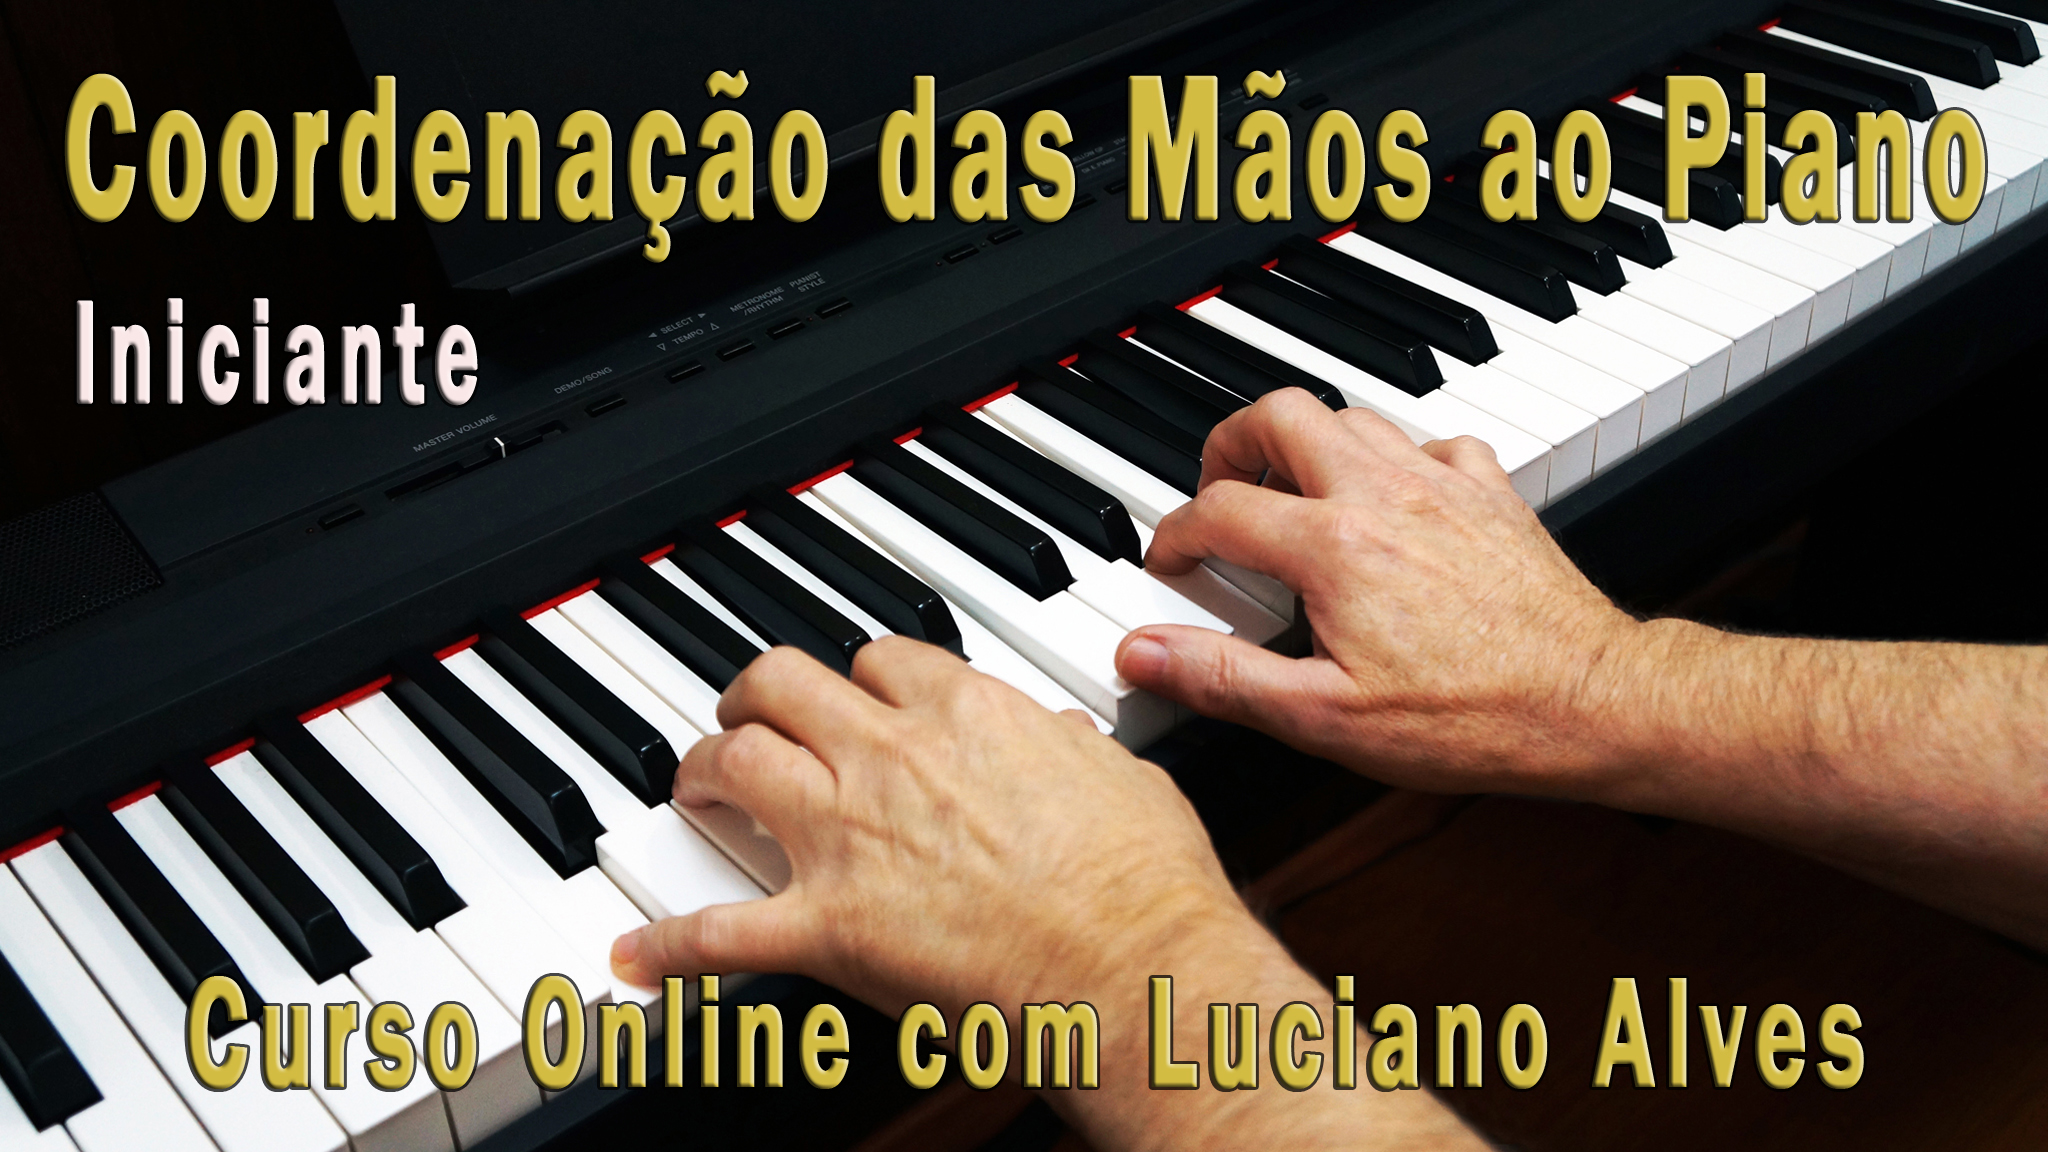 Curso Online “Coordenação das Mãos ao Piano (iniciante)” com Luciano Alves